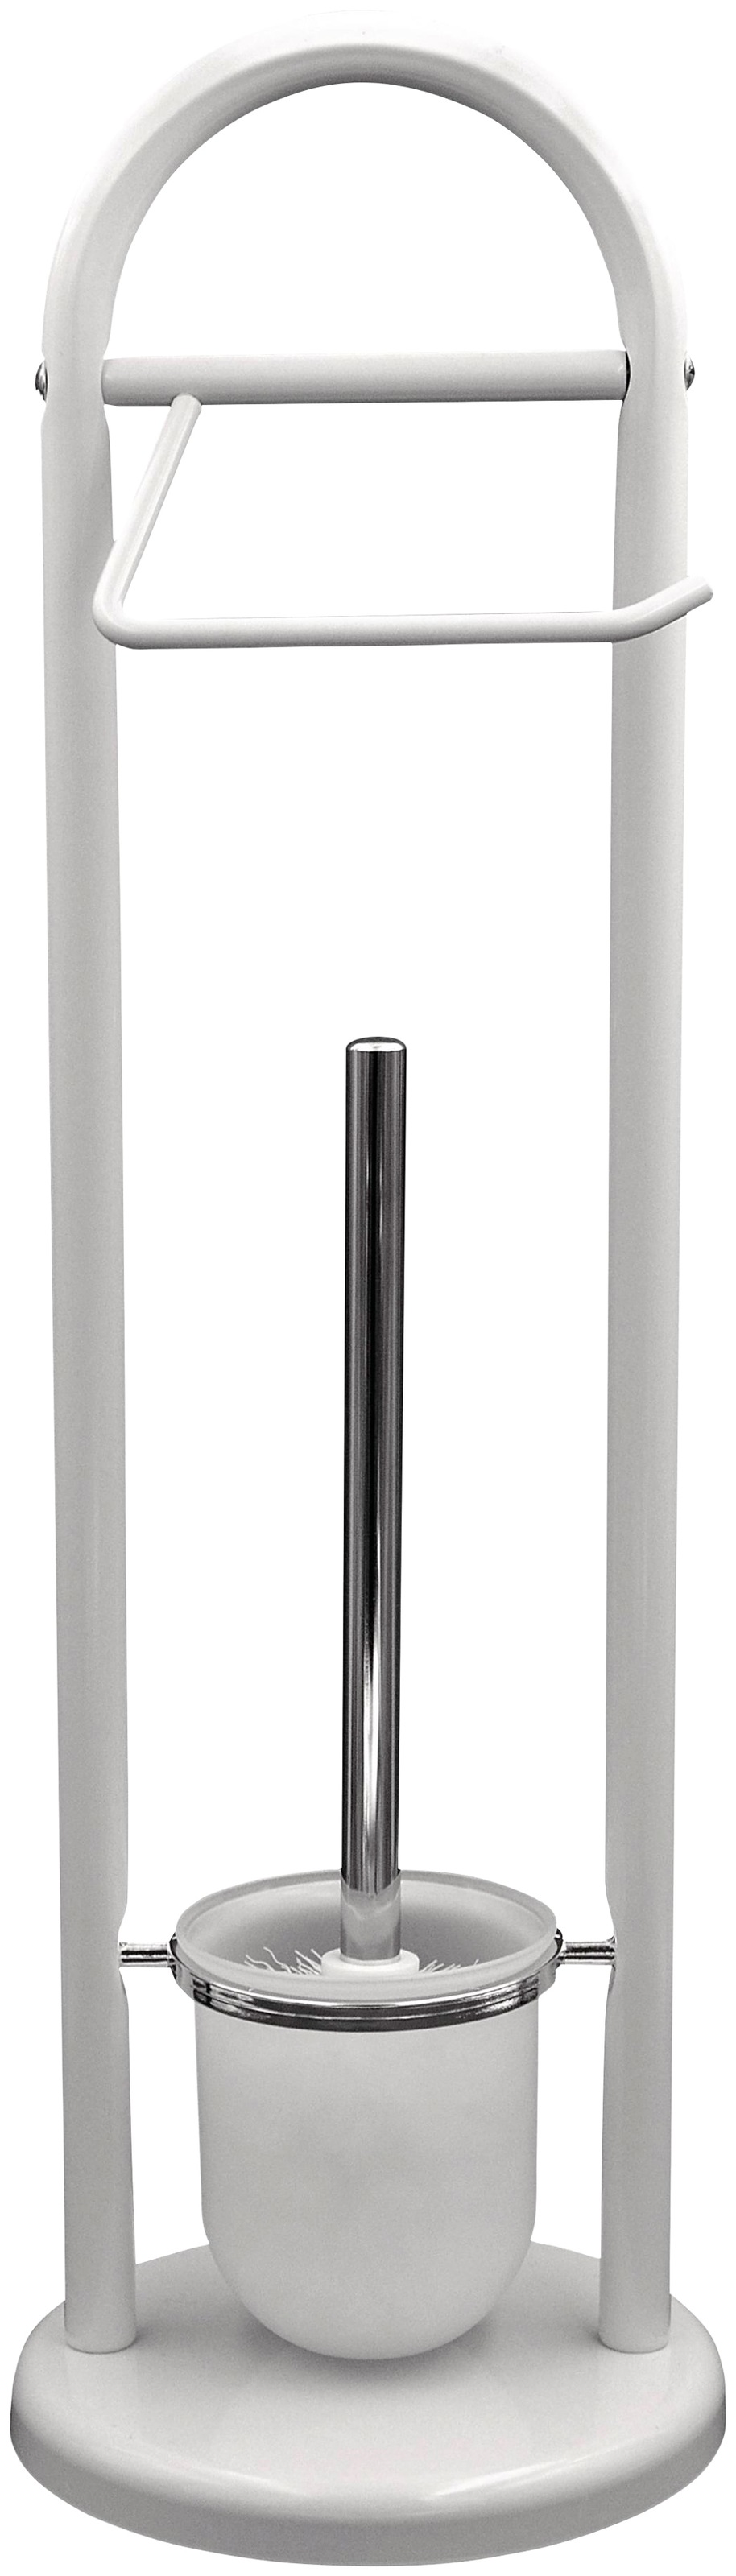 Ridder WC-Garnitur »Unique«, aus Metall, mit WC-Bürste und  Toilettenpapierhalter online kaufen bei OTTO